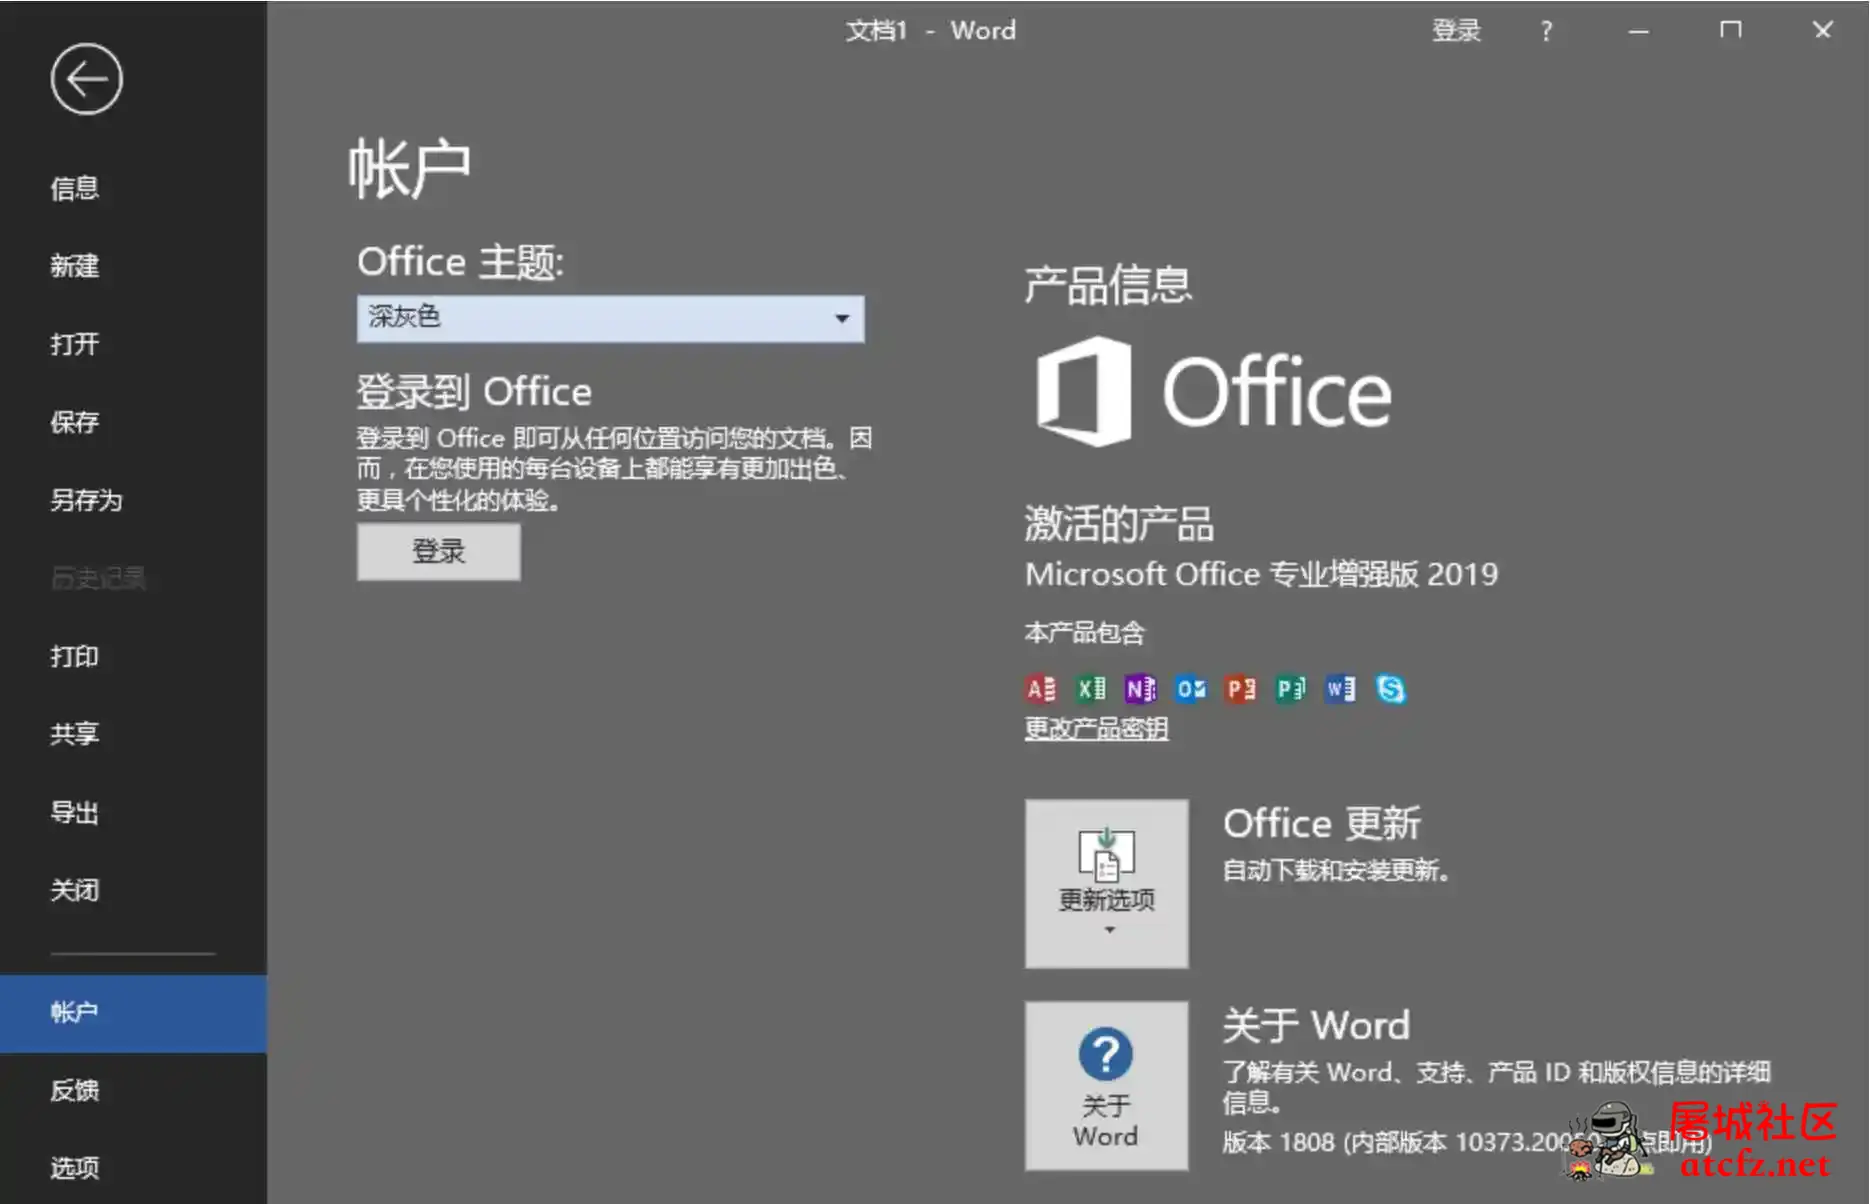 微软Office2019批量授权版批量授权商业版工具 屠城辅助网www.tcfz1.com5513